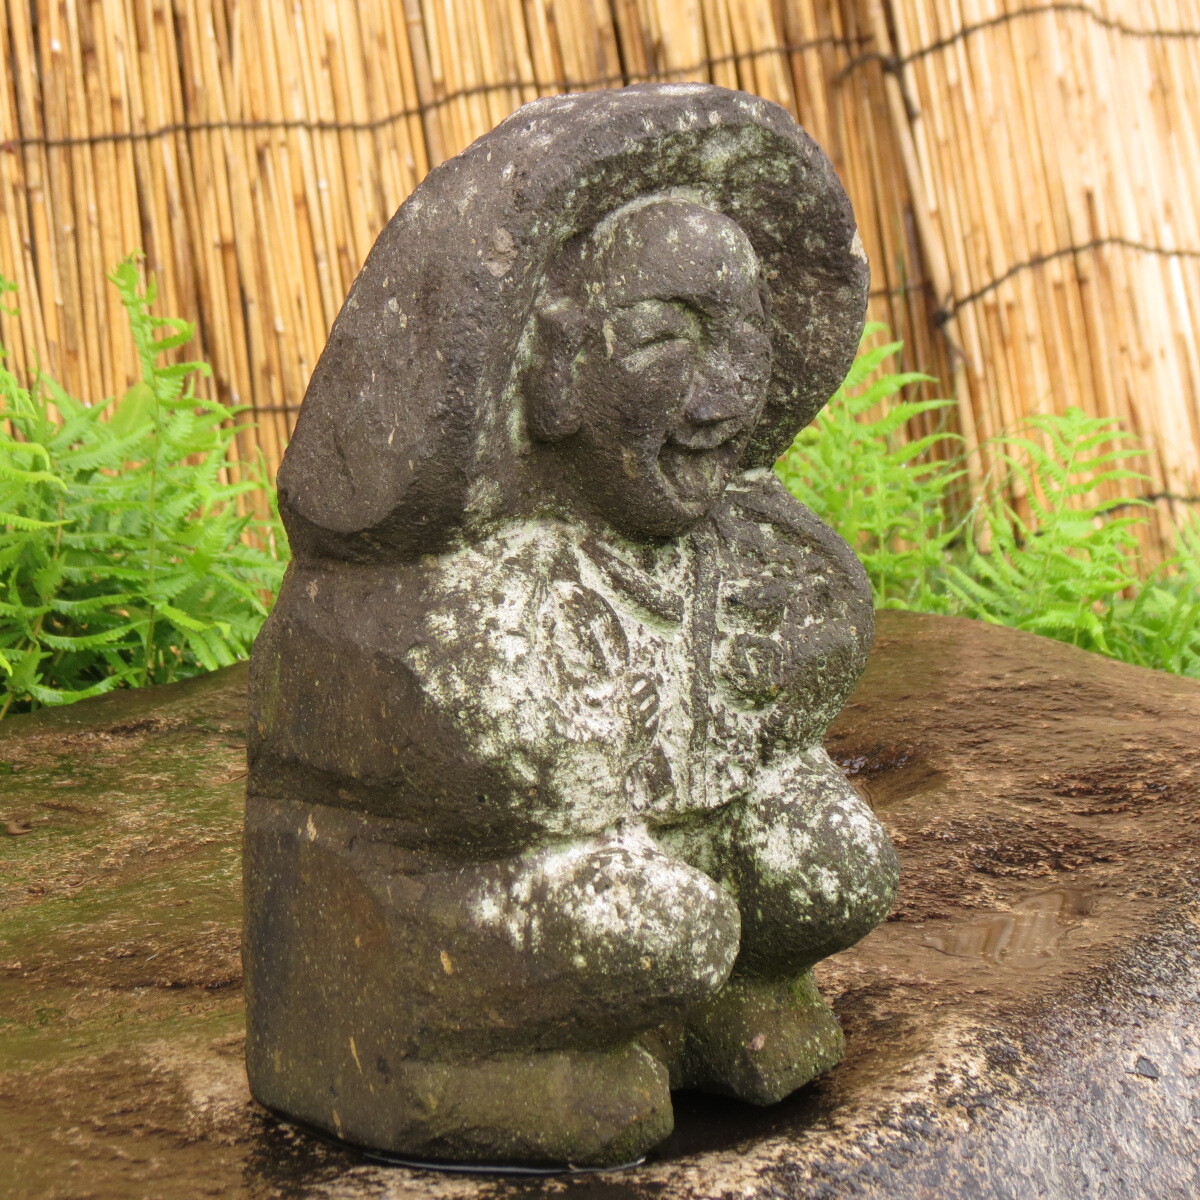  рисовое поле. бог sama высота 31cm масса 8.5kgtano can sa- двор камень Kyushu производство натуральный камень 